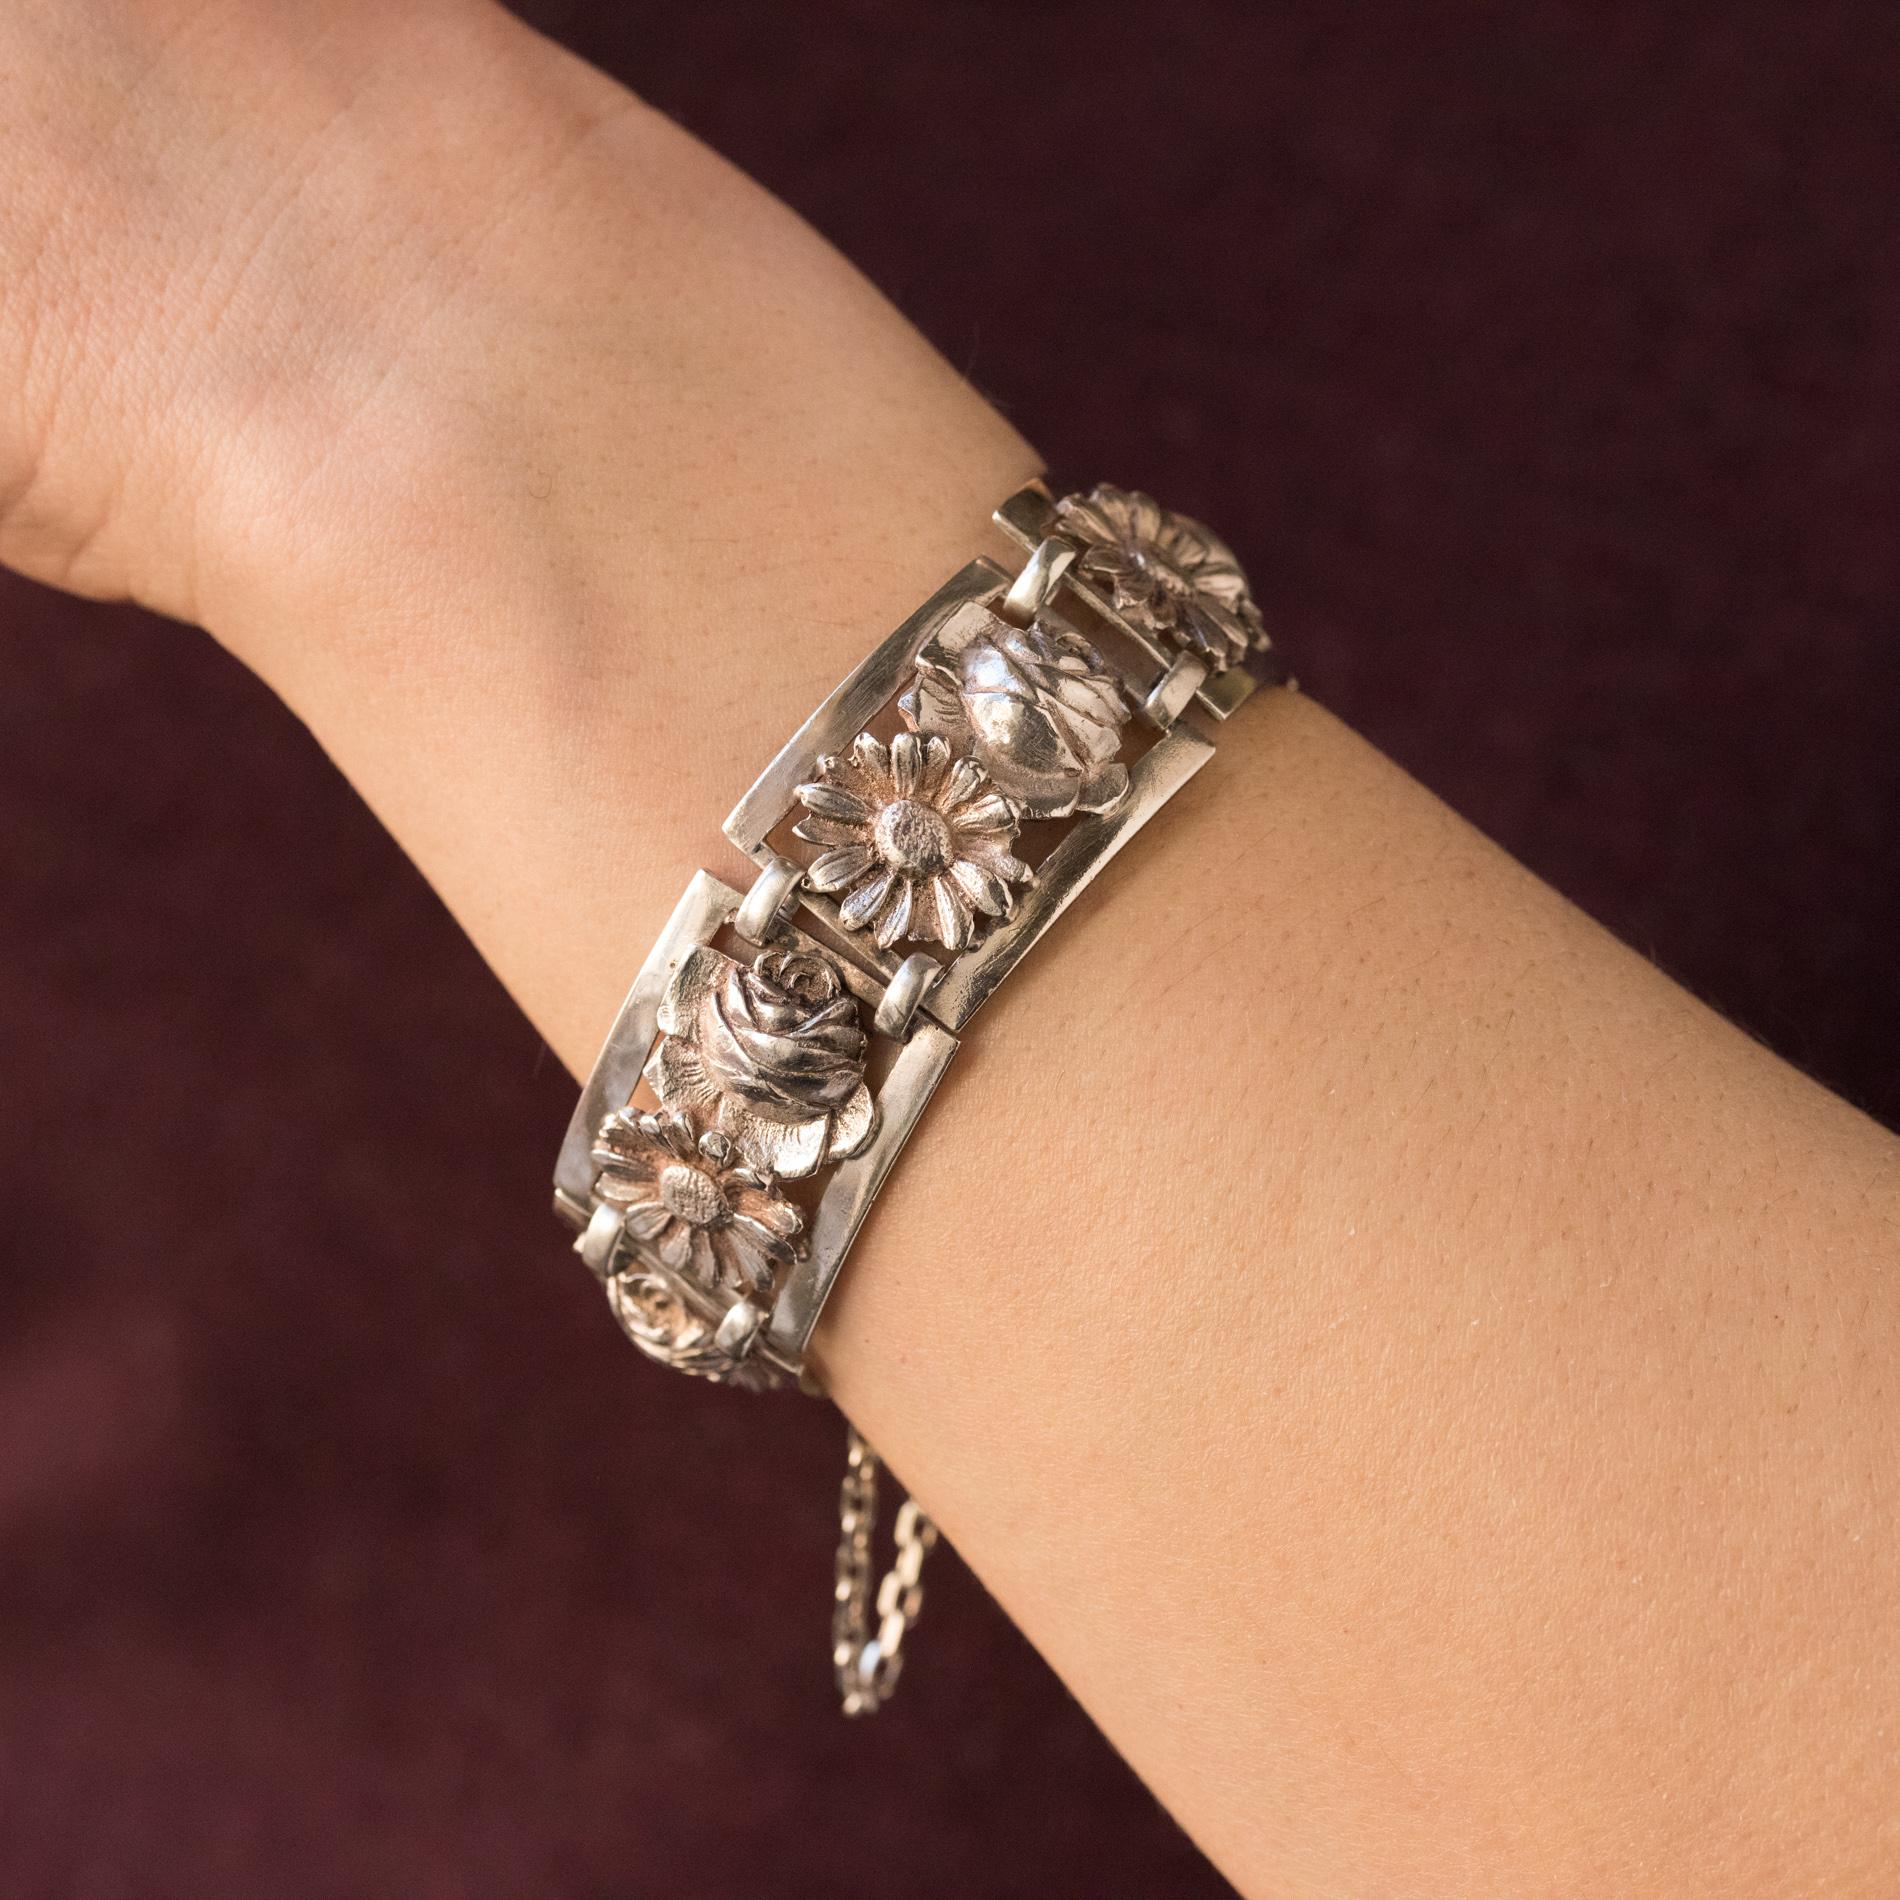 Bracelet en argent, poinçon crabe.
Magnifique bracelet ancien du début du XXe siècle, il se compose de motifs rectangulaires sculptés chacun d'une rose et d'une marguerite et reliés entre eux par deux anneaux oblongs. Le fermoir est un cliquet à